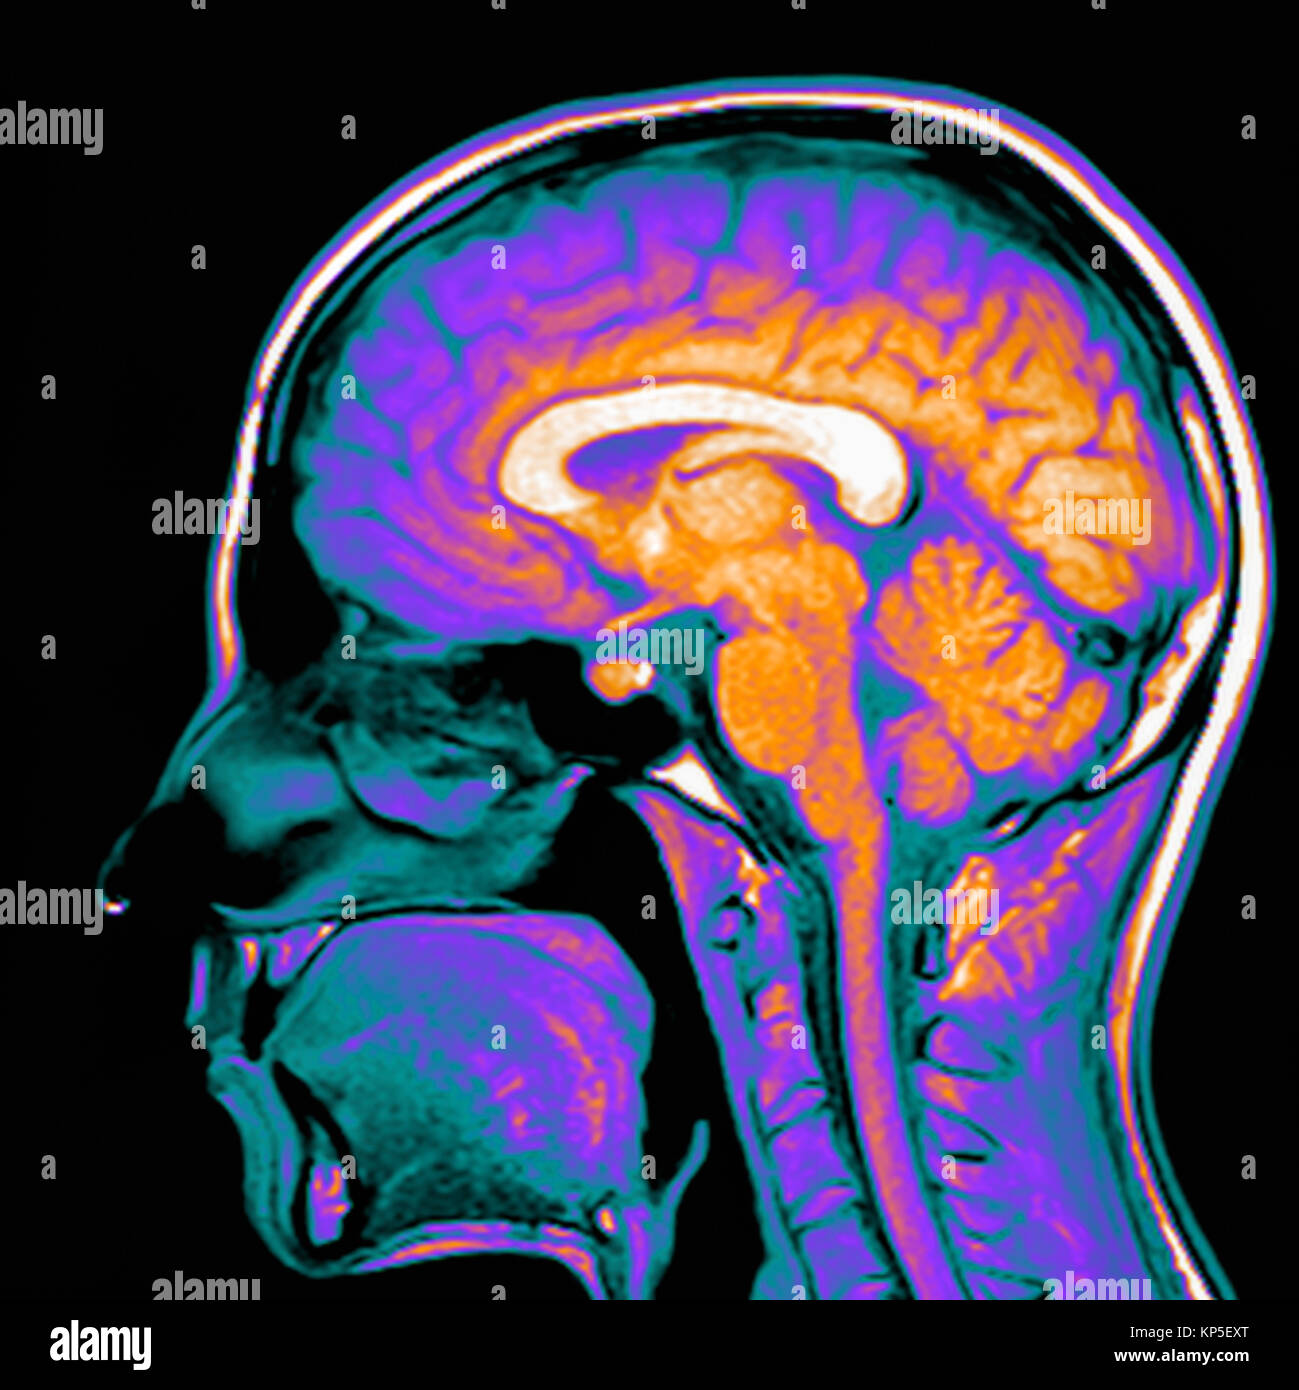 Farbige Magnetresonanztomographie (MRT) Scan eines Sagittalschnitt durch eines Patienten Kopf, eines gesunden menschlichen Gehirns. Stockfoto